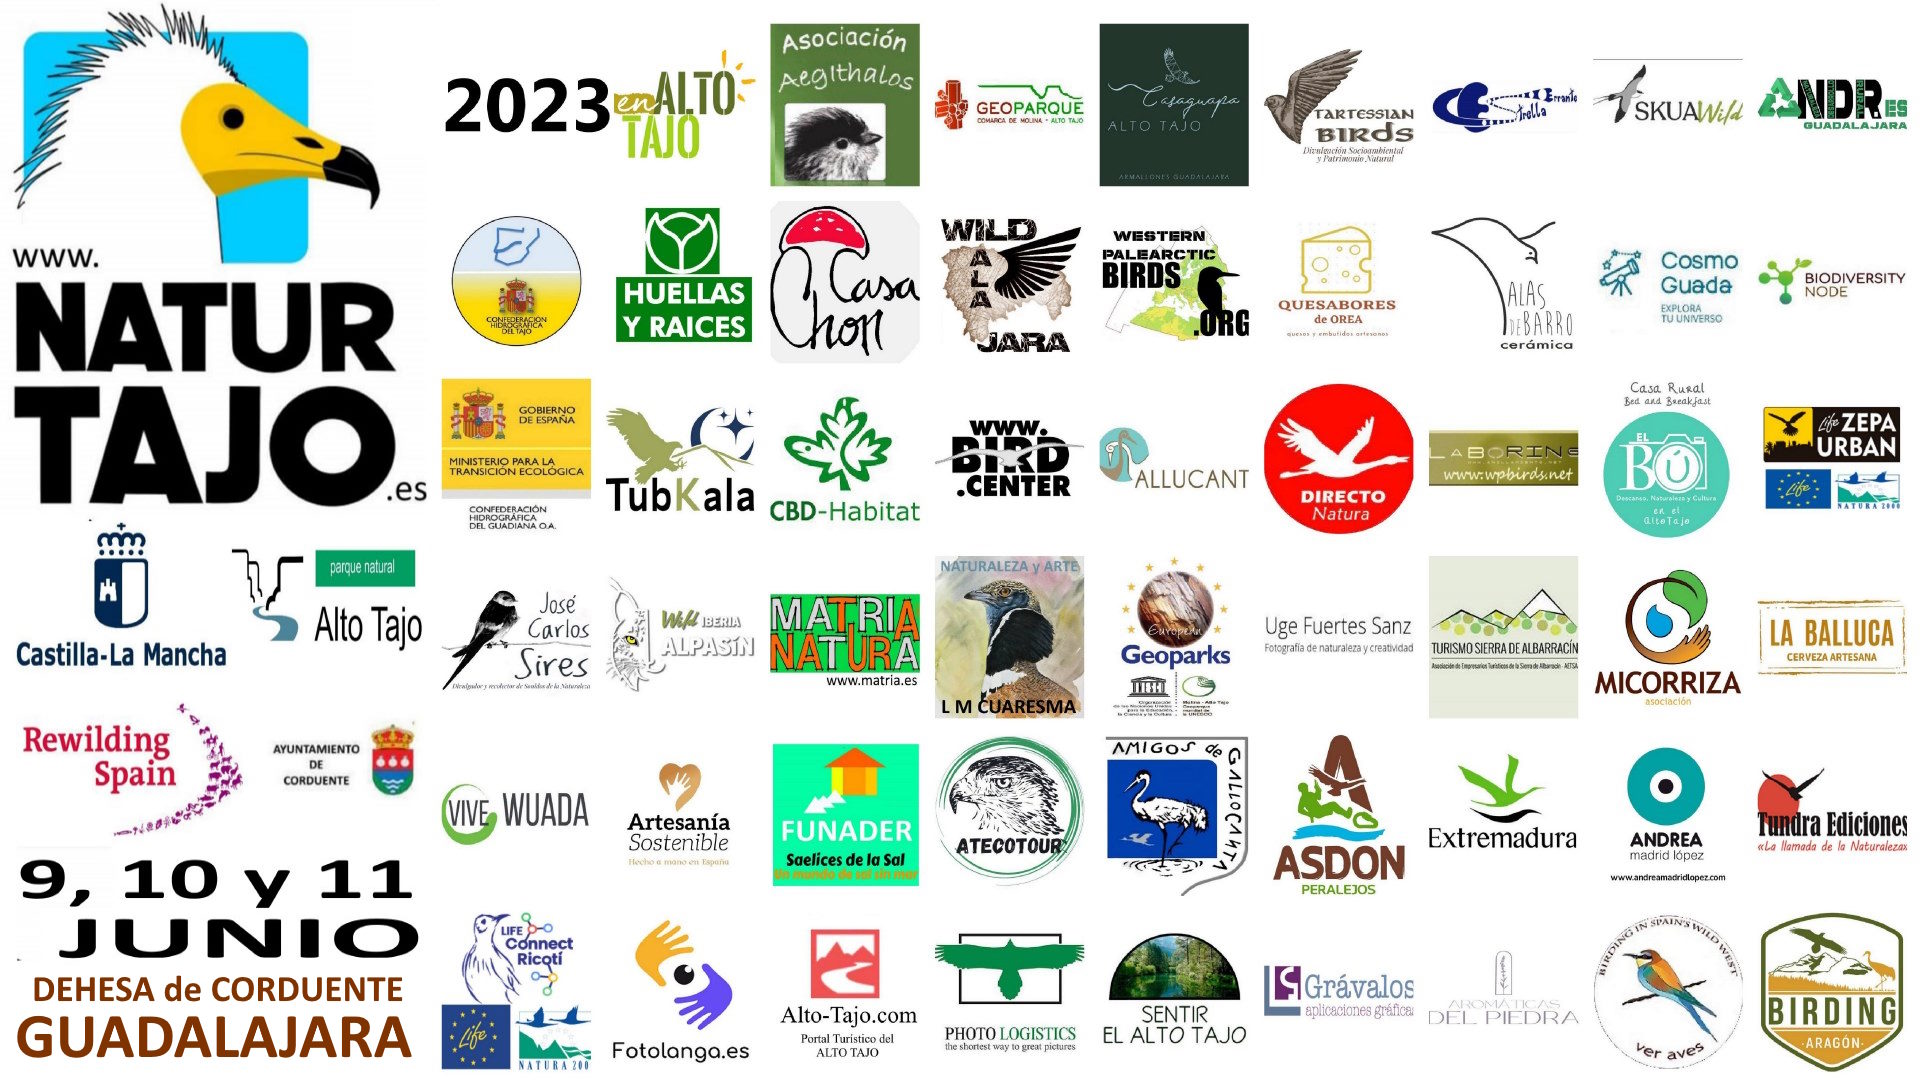 NaturTajo 2023: Feria de Turismo de Observación de la Naturaleza en el Sistema Ibérico Sur